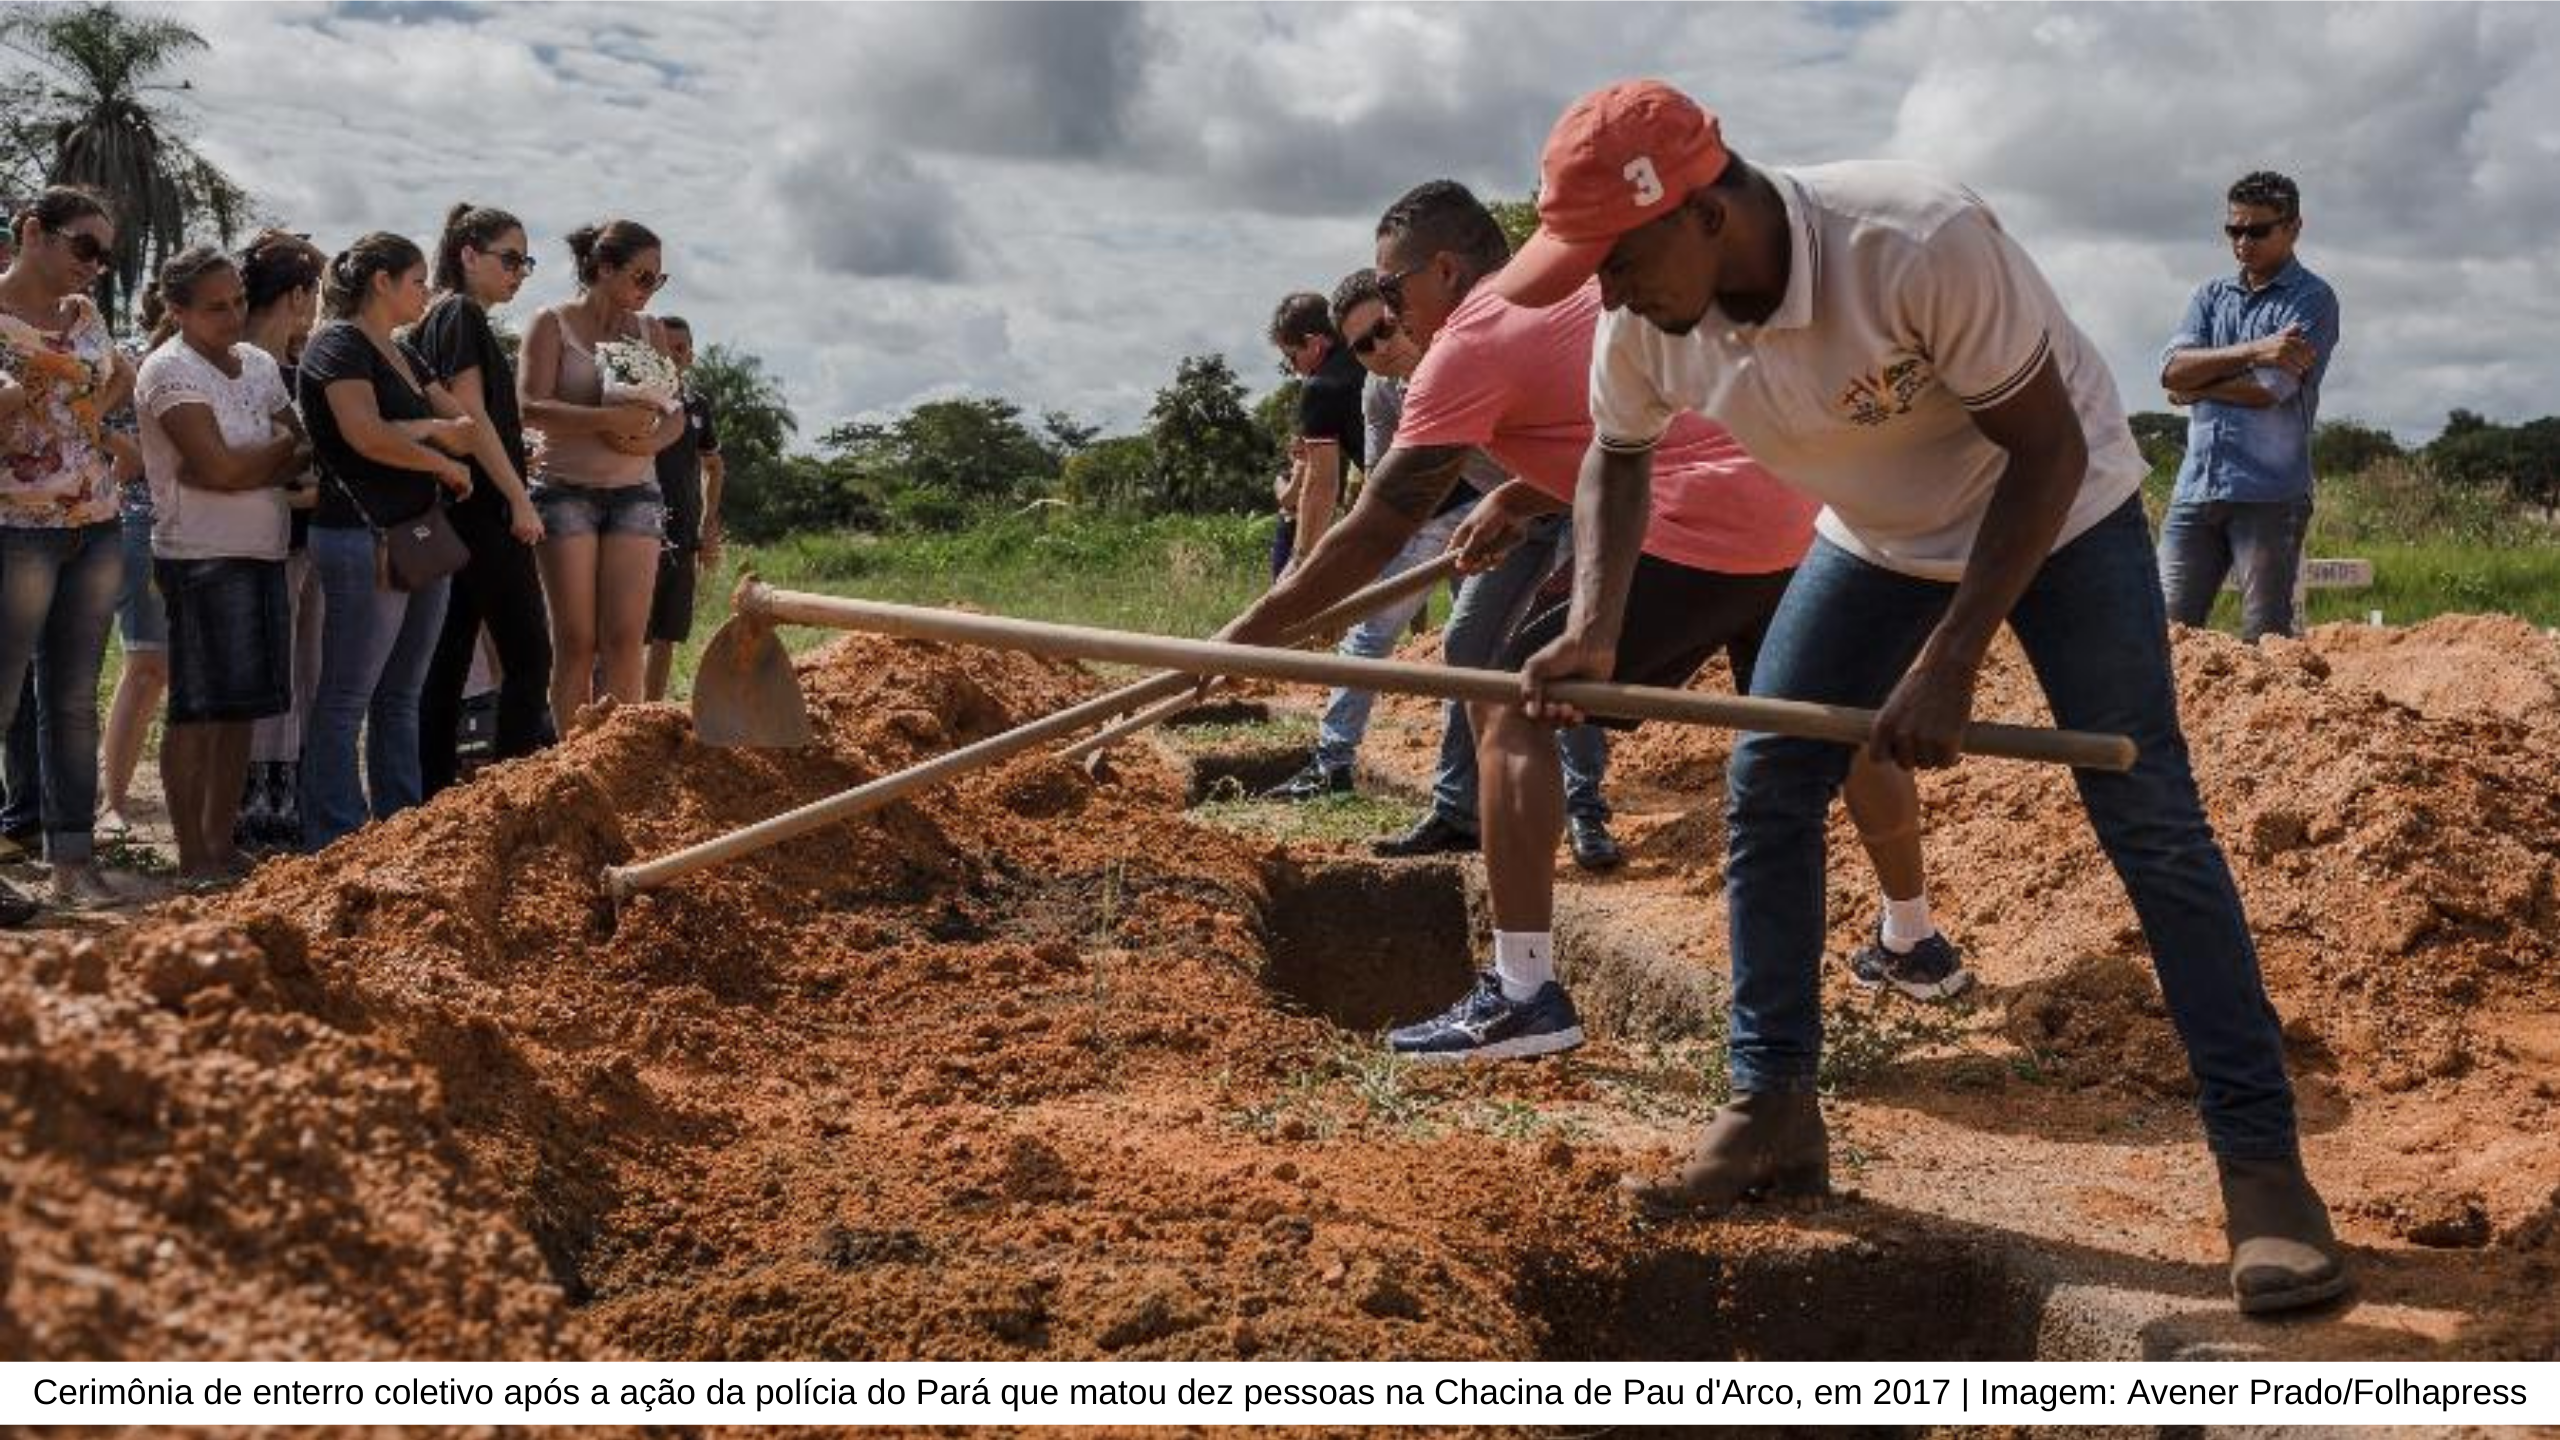 Cerimônia de enterro coletivo após a ação da polícia do Pará que matou dez pessoas na Chacina de Pau d'Arco, em 2017 Imagem: Avener Prado/Folhapress